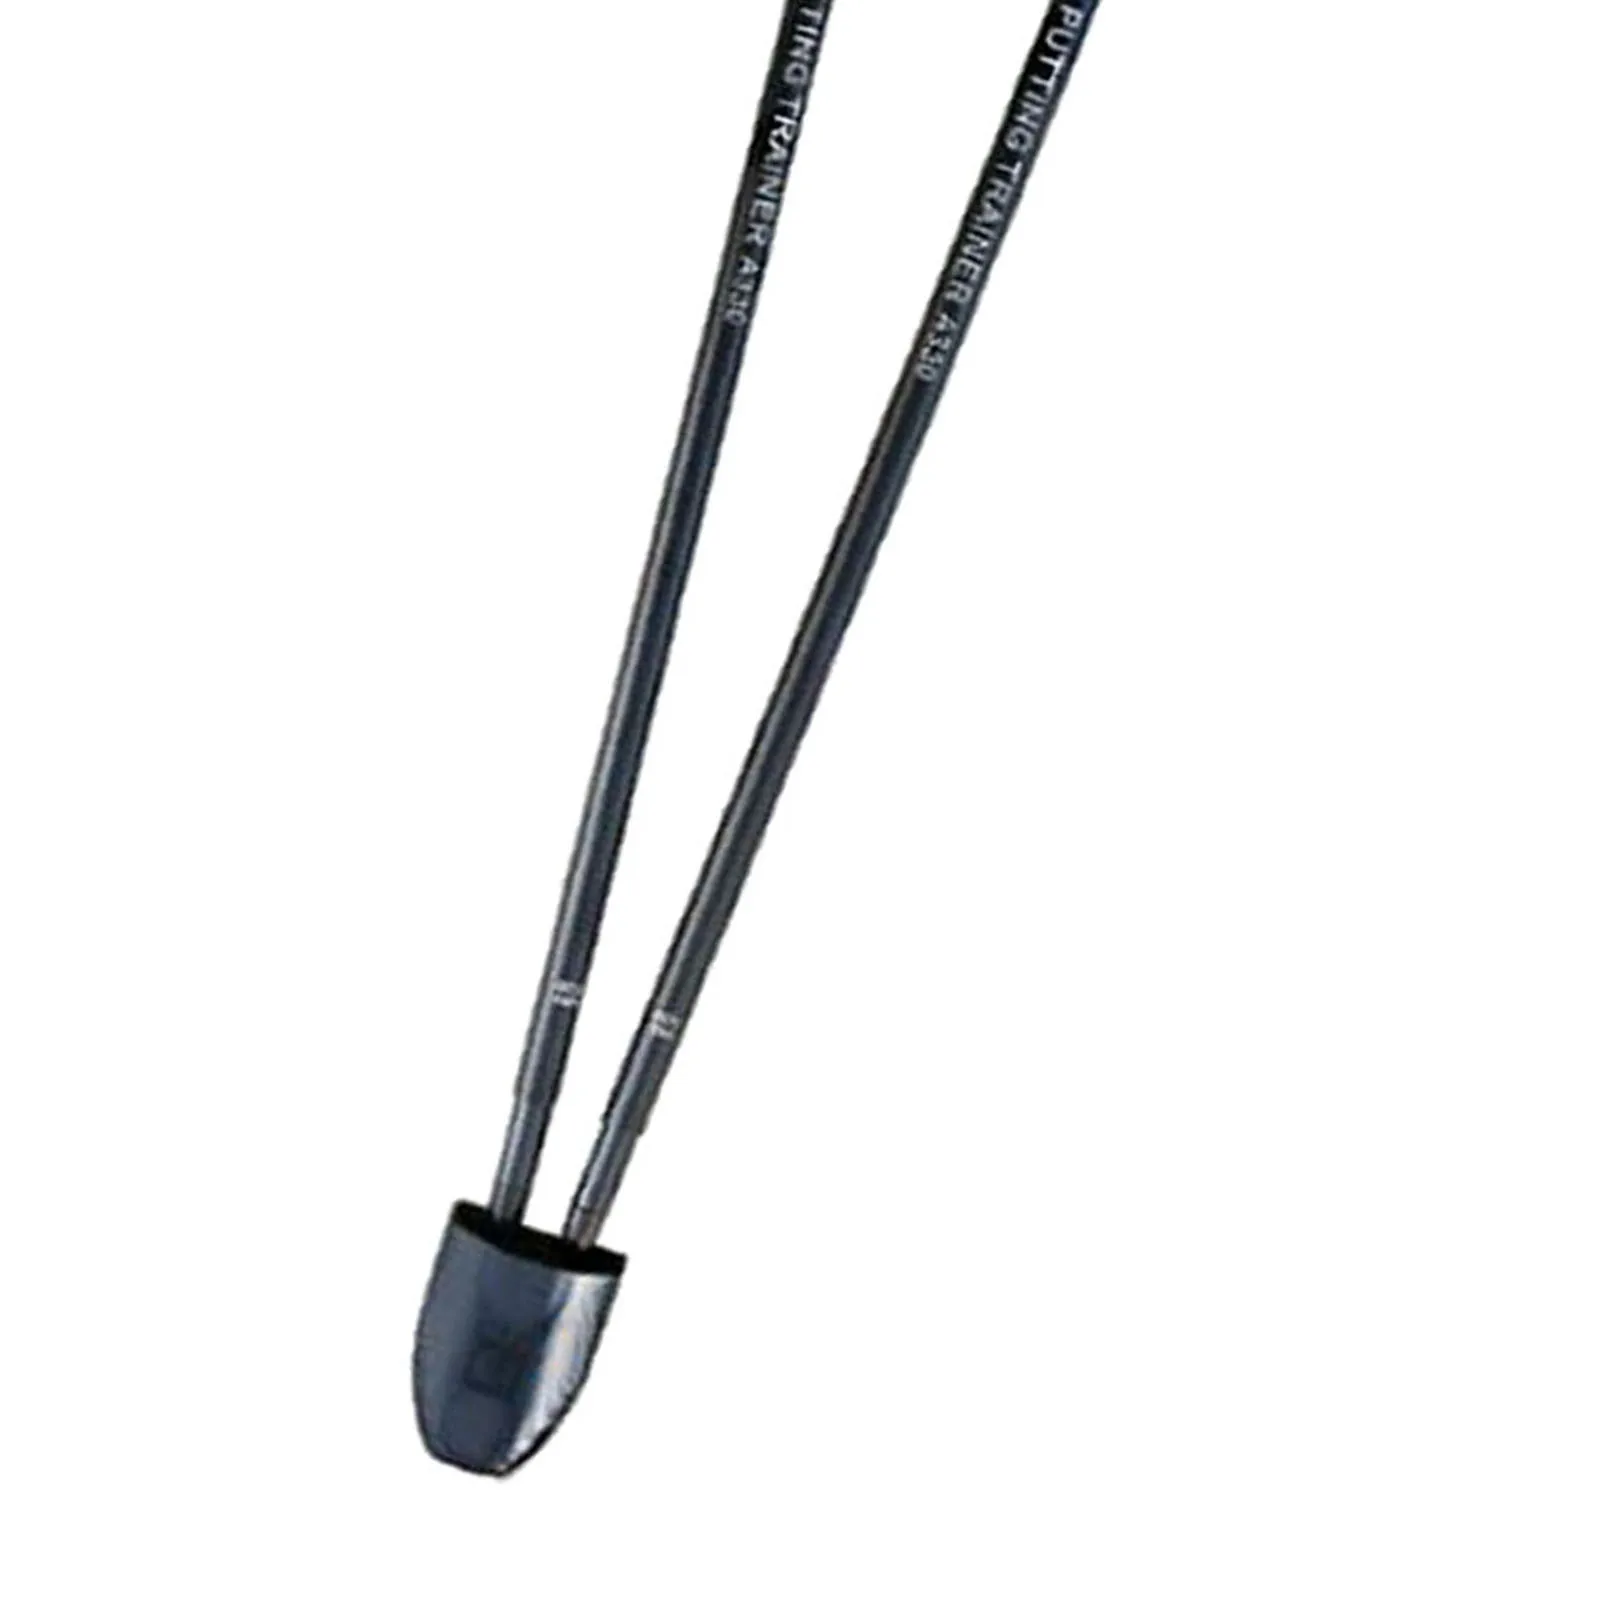 

Аксессуар для гольфа, инструмент для тренировки клюшки, прикрепляется к черному валу клюшки